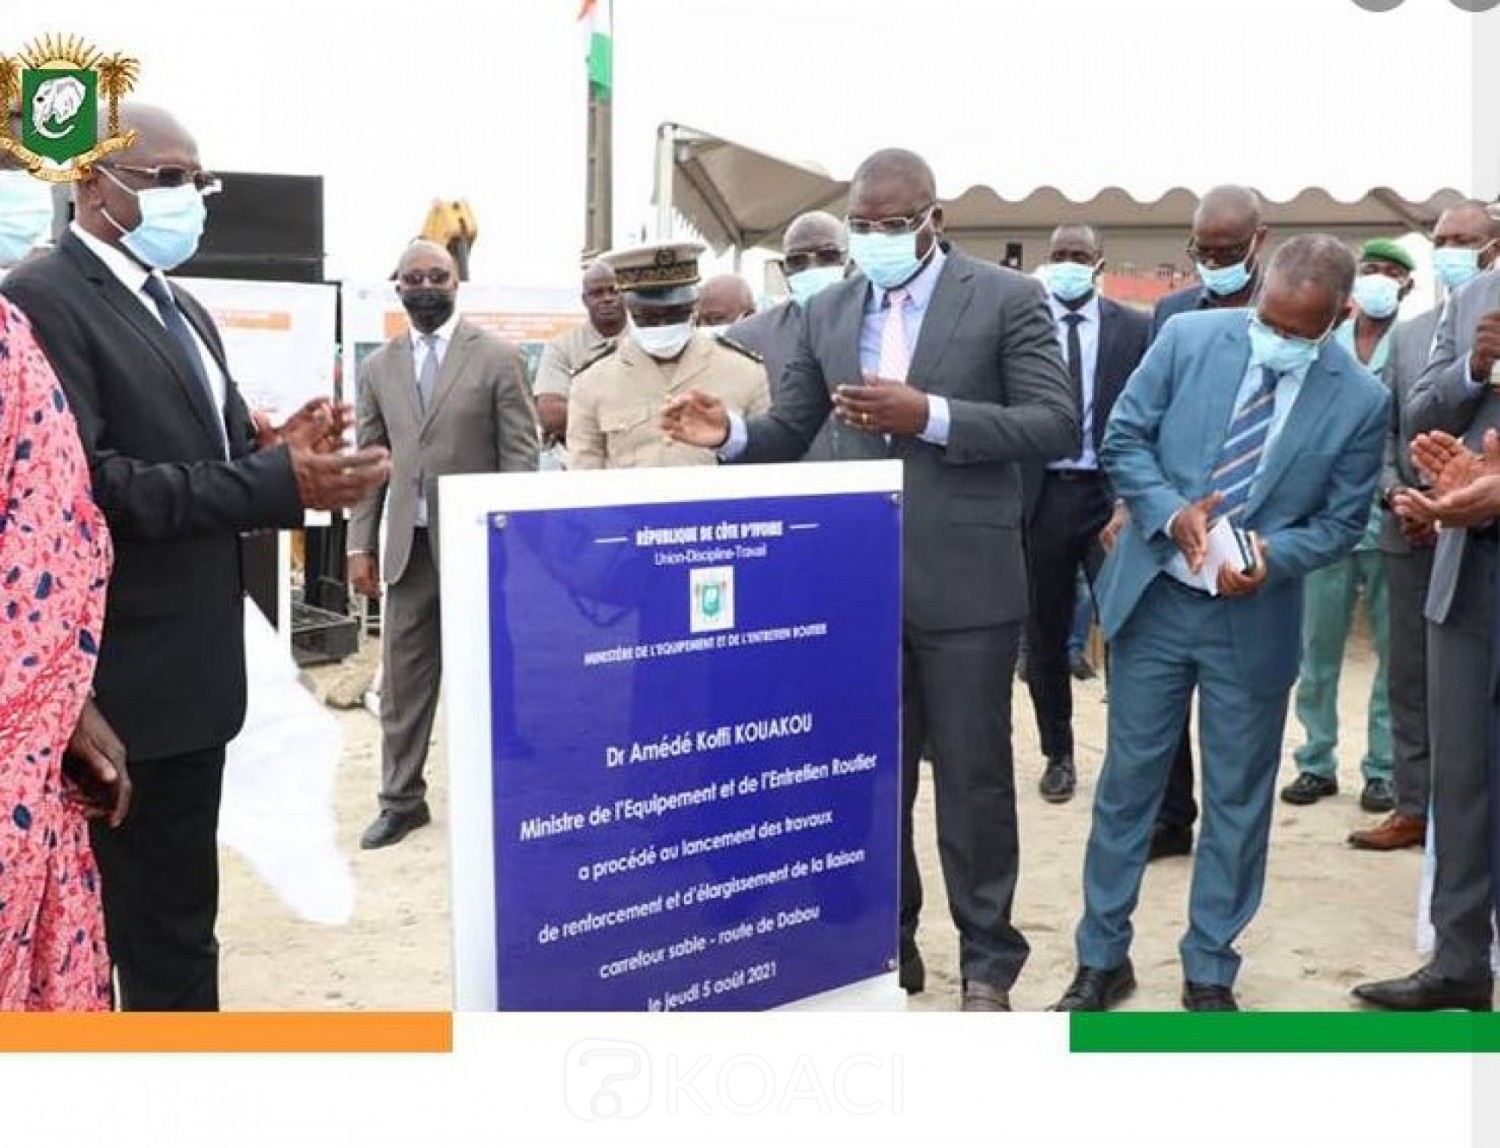 Côte d'Ivoire : Les travaux de renforcement et d'élargissement de l'axe carrefour sable - siporex- route de Dabou lancés